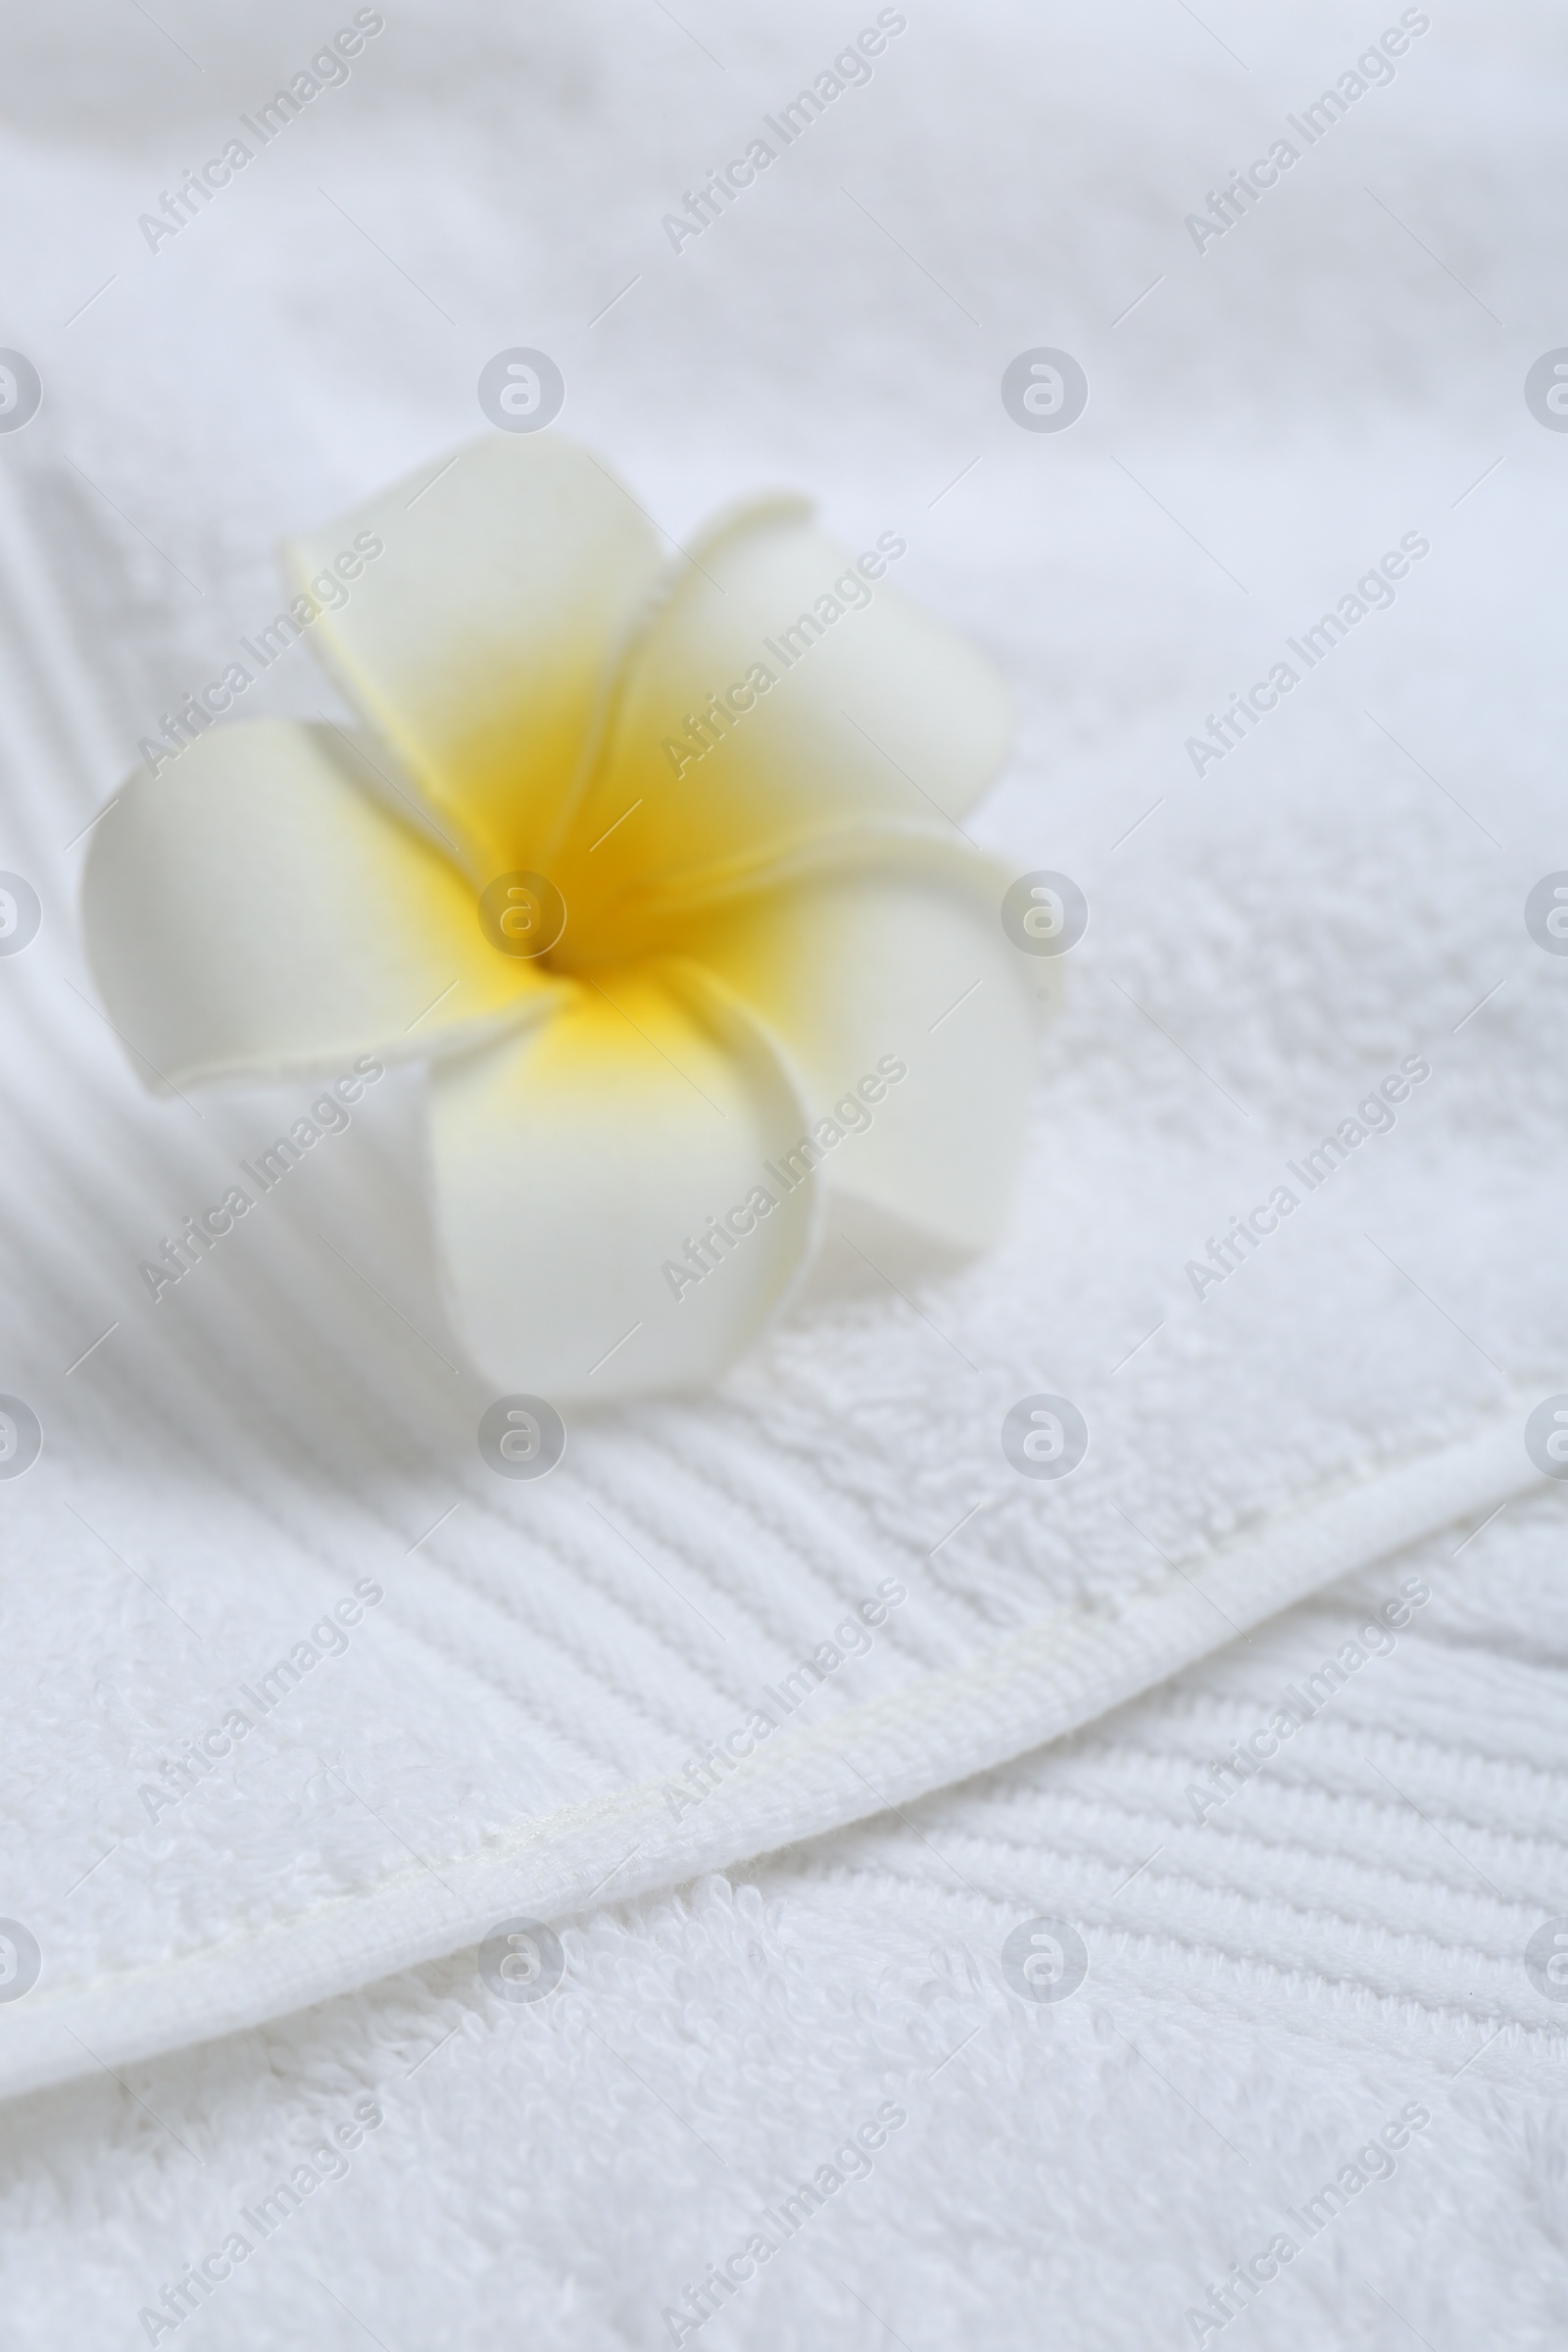 Photo of Plumeria flower on white terry towel, closeup